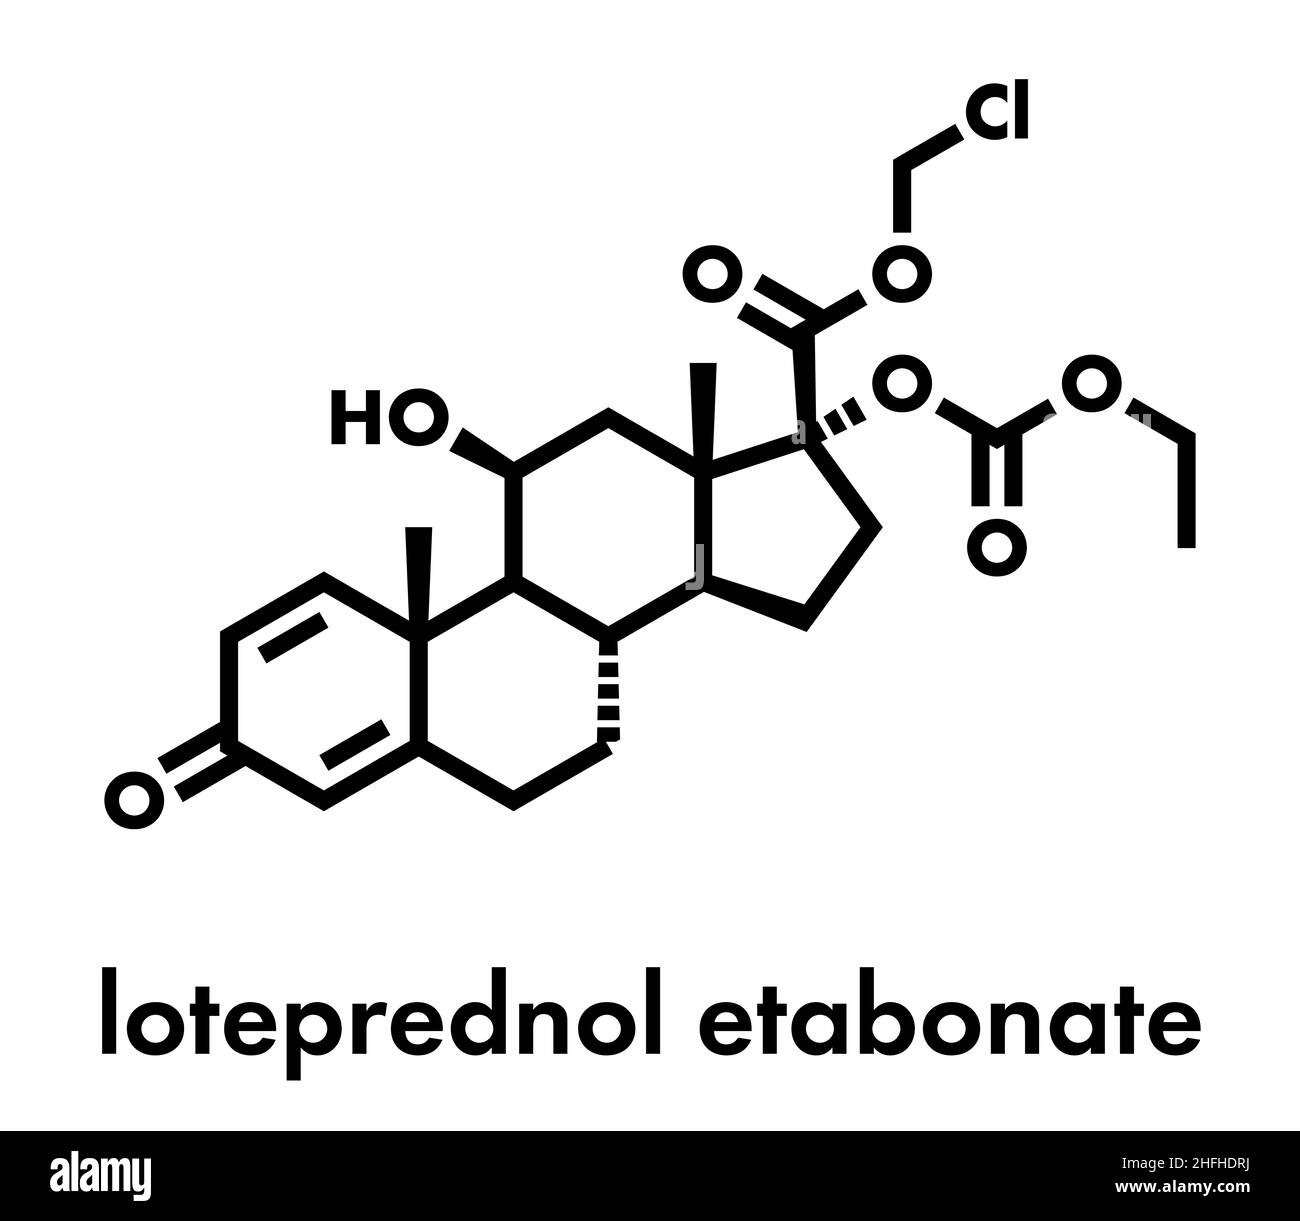 Loteprednol etabonate corticosteroid drug molecule. Skeletal formula. Stock Vector